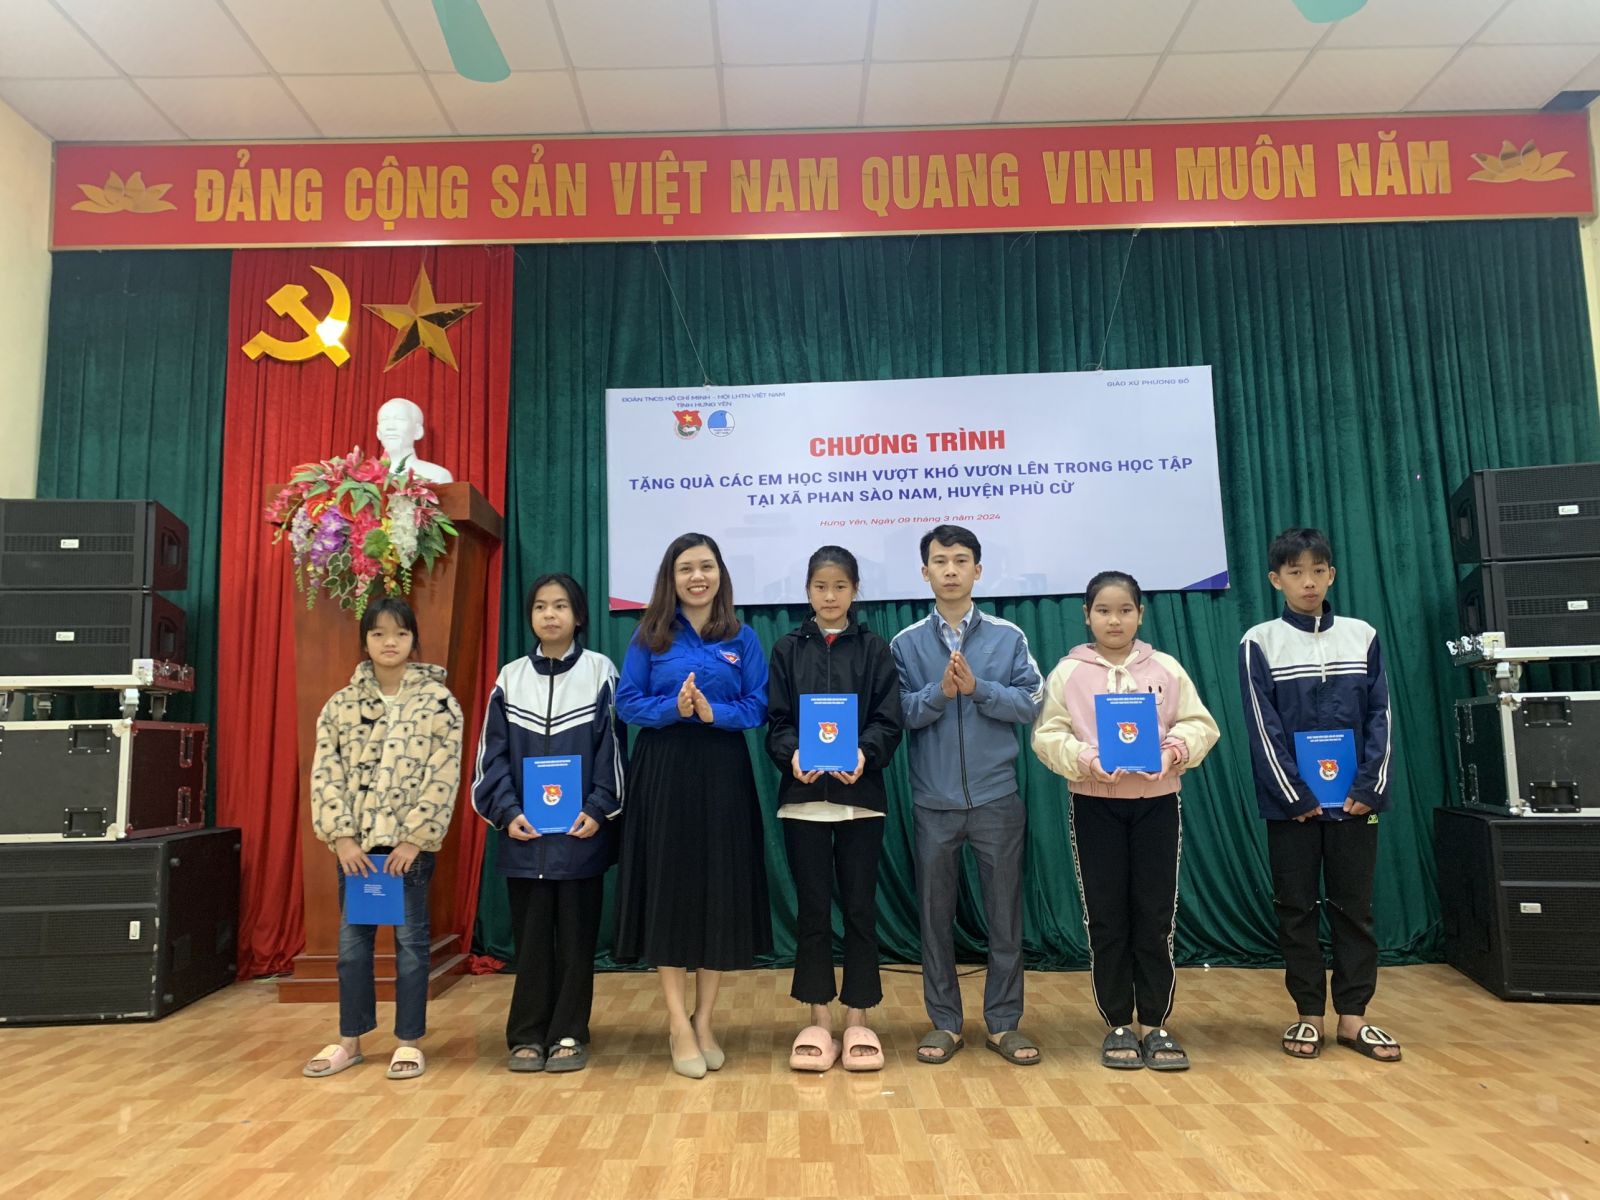 Tỉnh đoàn, Hội LHTN Việt Nam tỉnh cùng Giáo xứ Phương Bồ tổ chức chương trình tặng quà cho các em học sinh vượt khó vươn lên trong học tập tại xã Phan Sào Nam, huyện Phù Cừ năm 2024